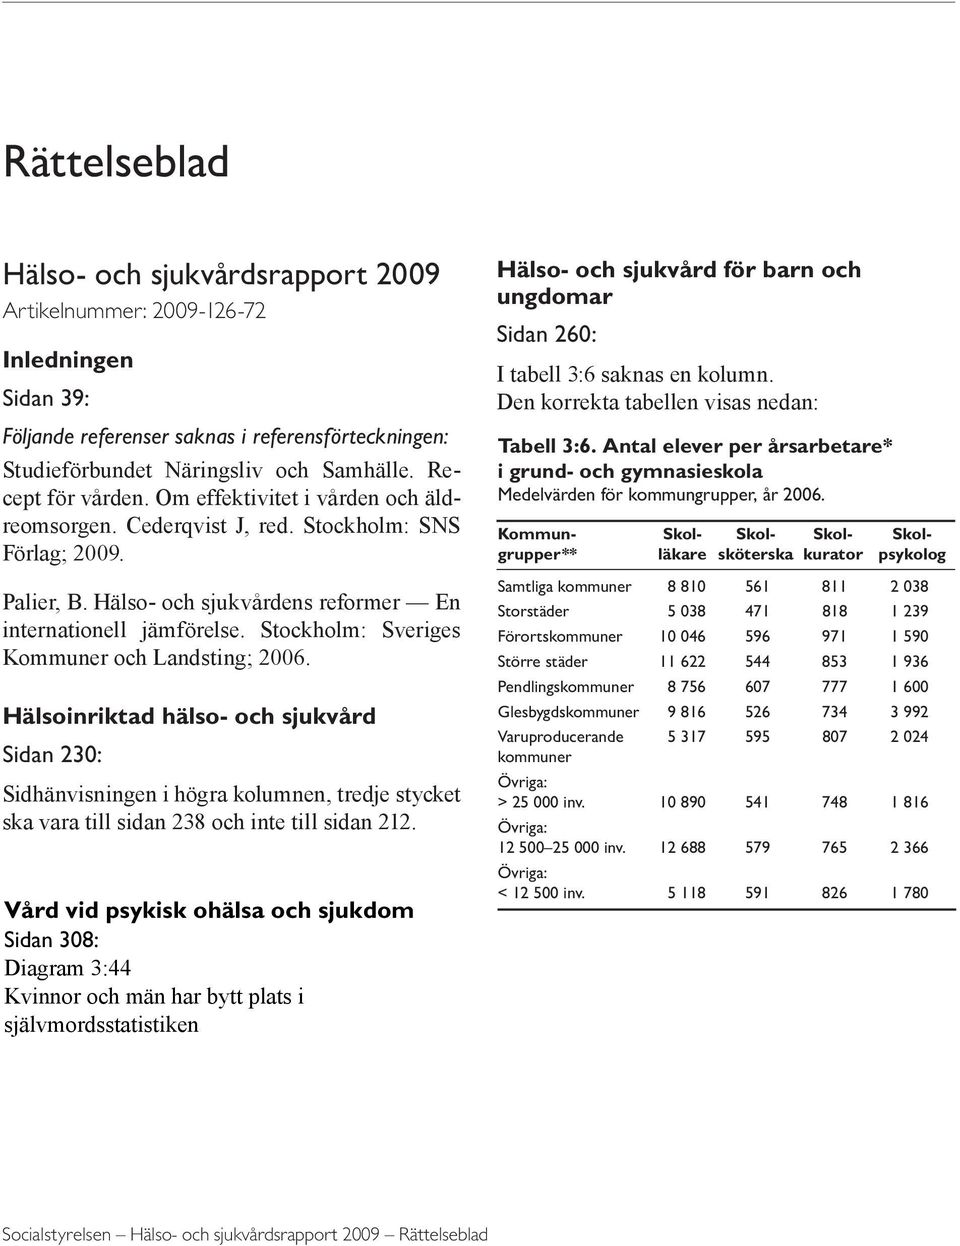 Stockholm: Sveriges Kommuner och Landsting; 2006. Hälsoinriktad hälso- och sjukvård Sidan 230: Sidhänvisningen i högra kolumnen, tredje stycket ska vara till sidan 238 och inte till sidan 212.